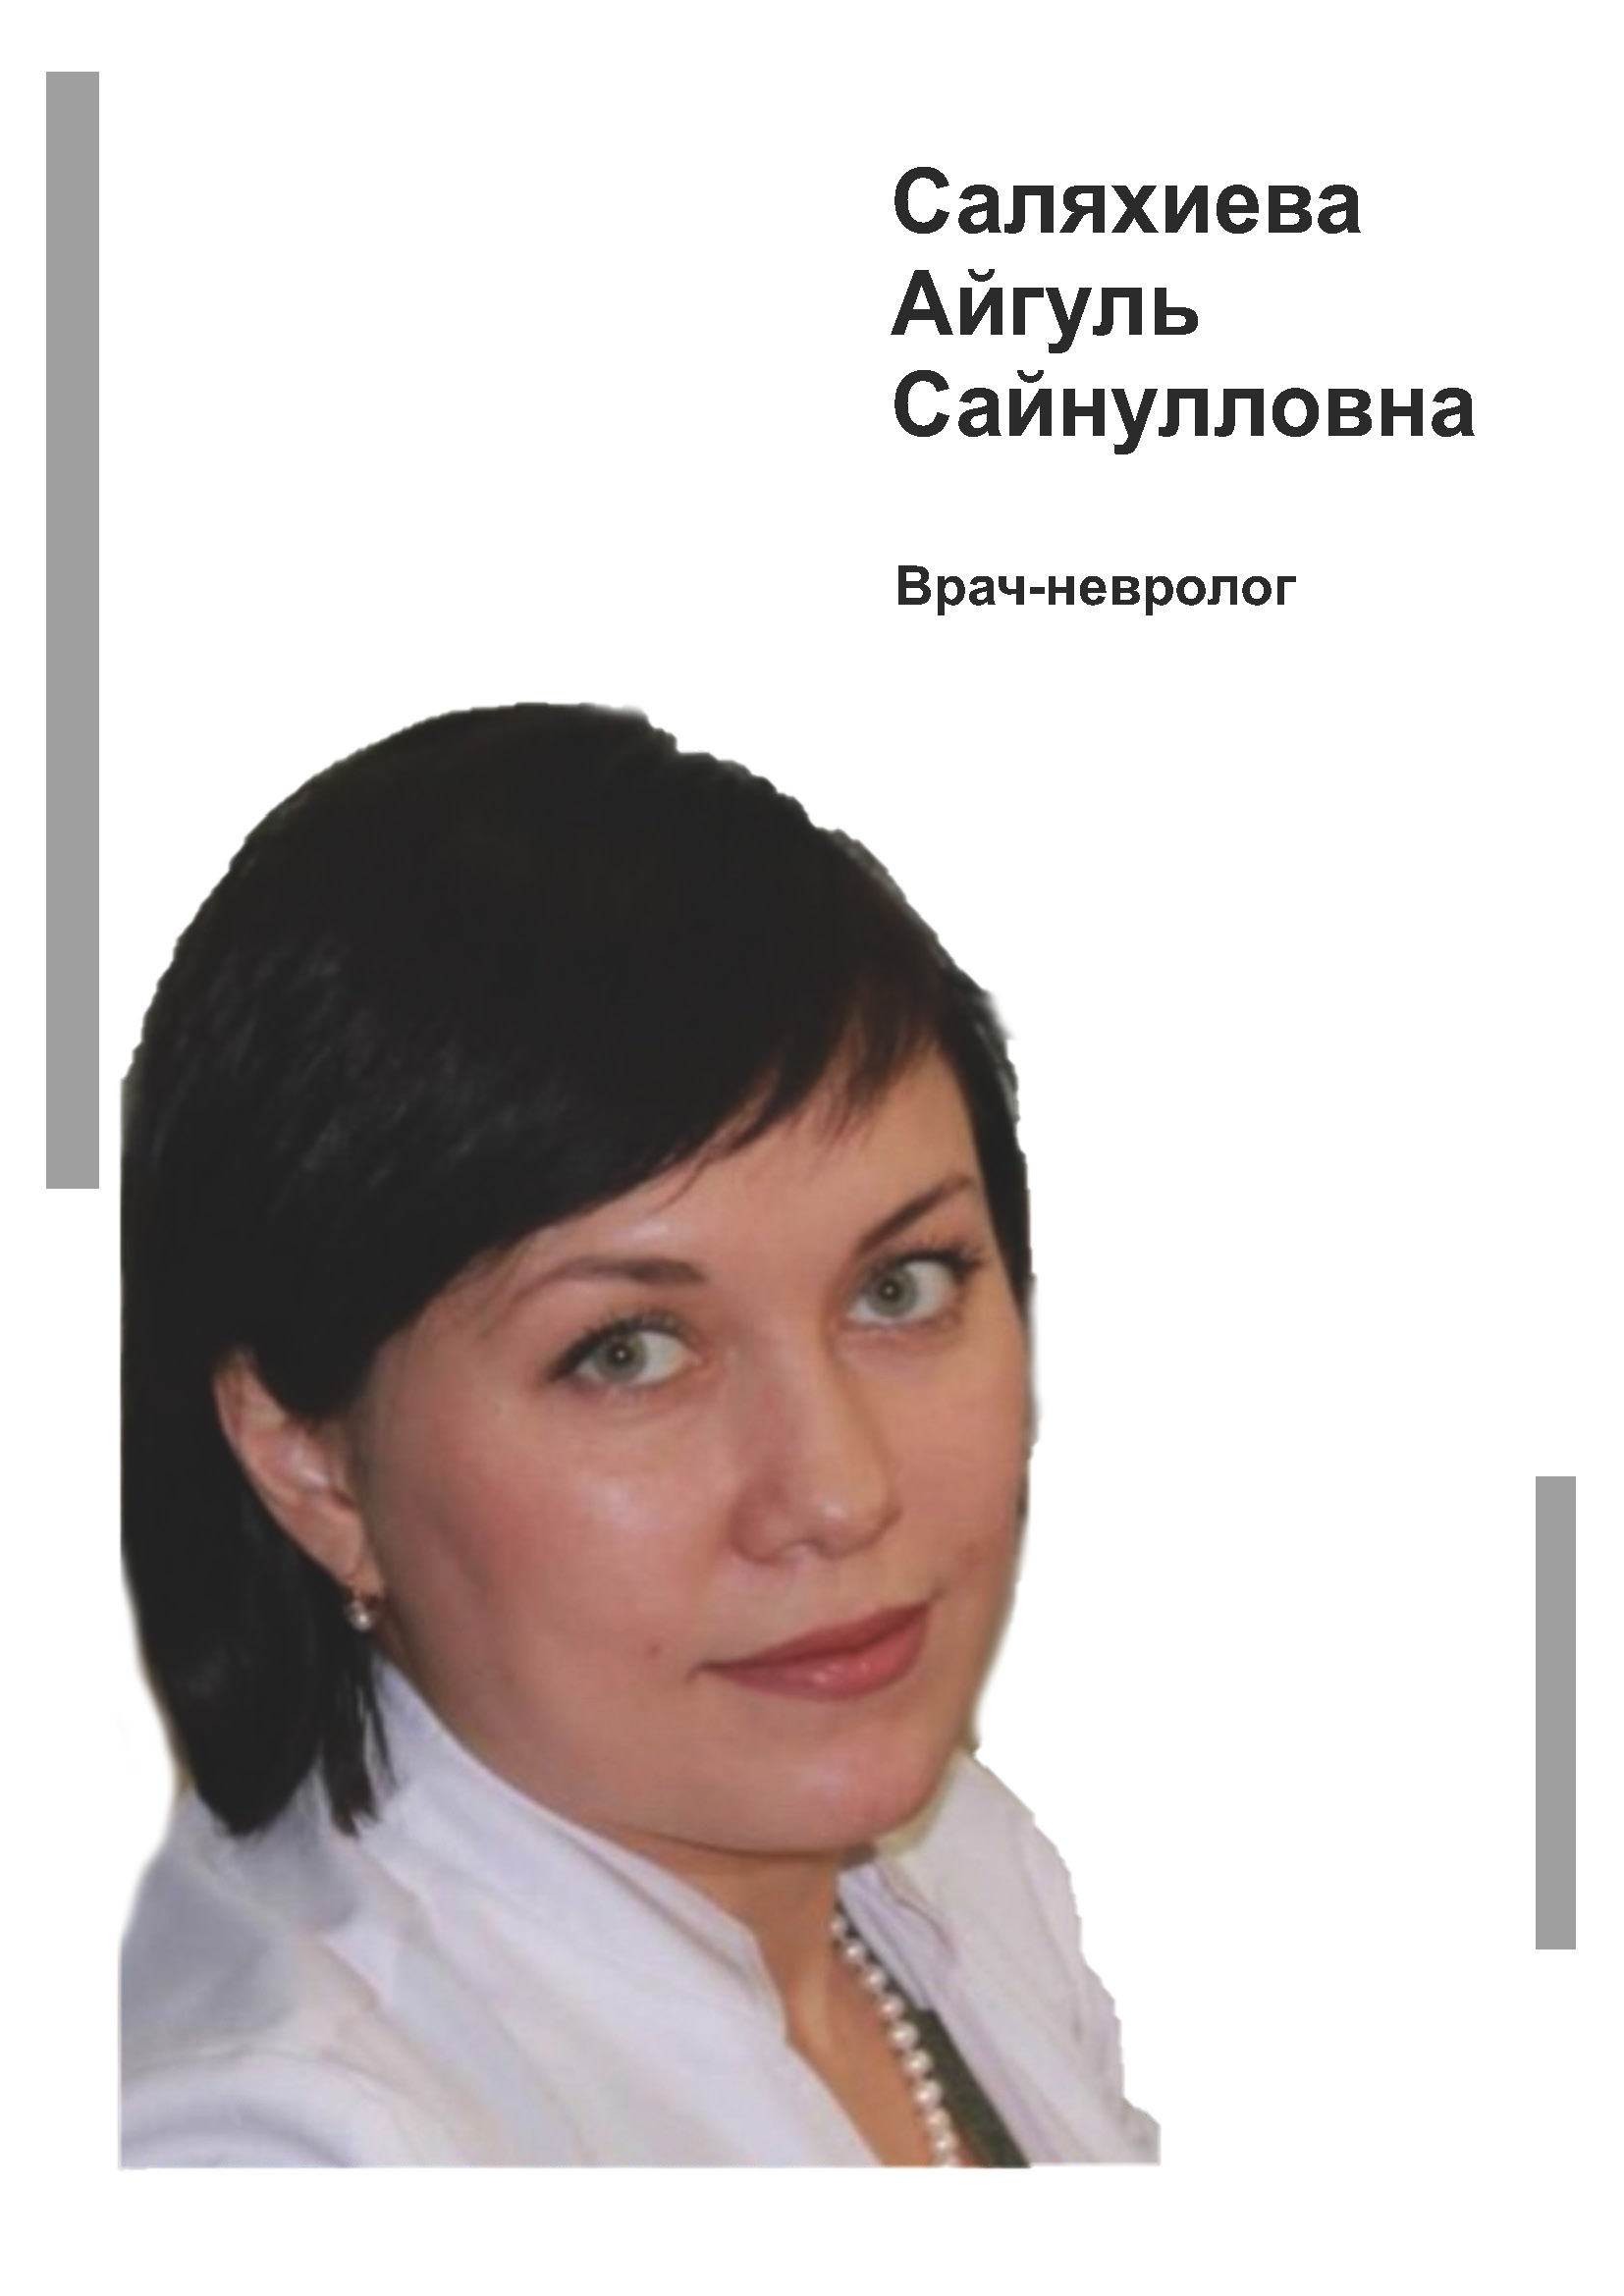 Саляхиева Айгуль Сайнулловна - врач невролог в клинике Lezaffe г. Югорск